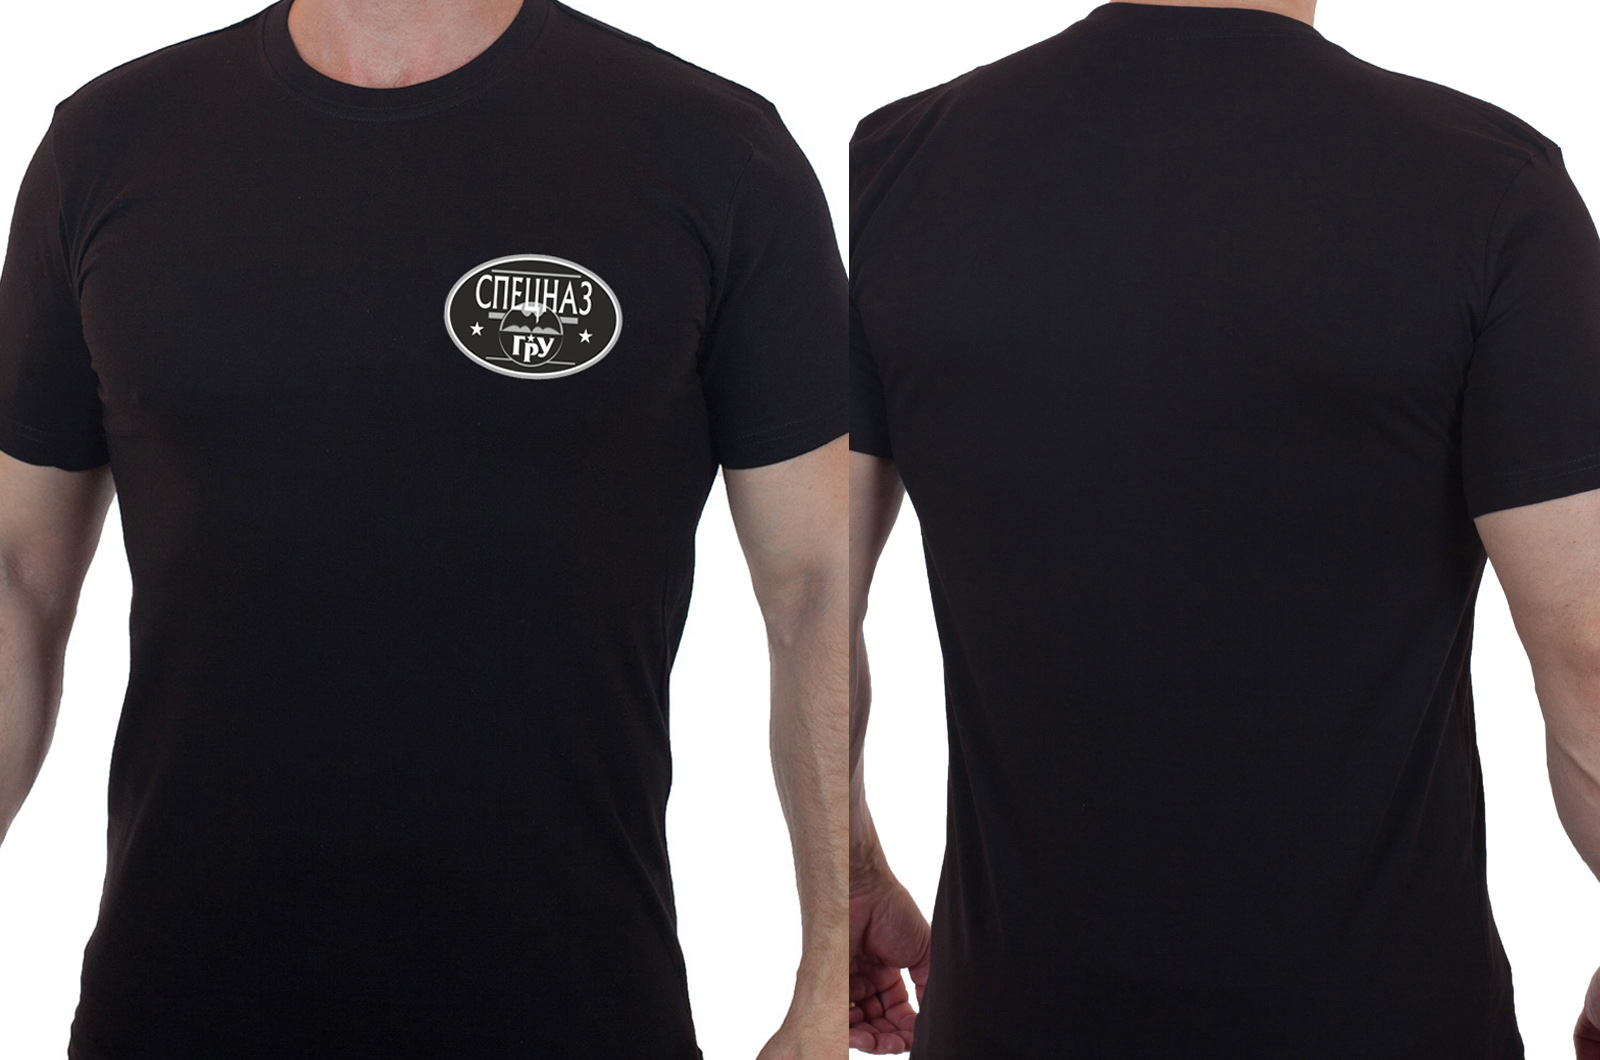 Чёрная футболка с термотрансфером "Спецназ ГРУ" 